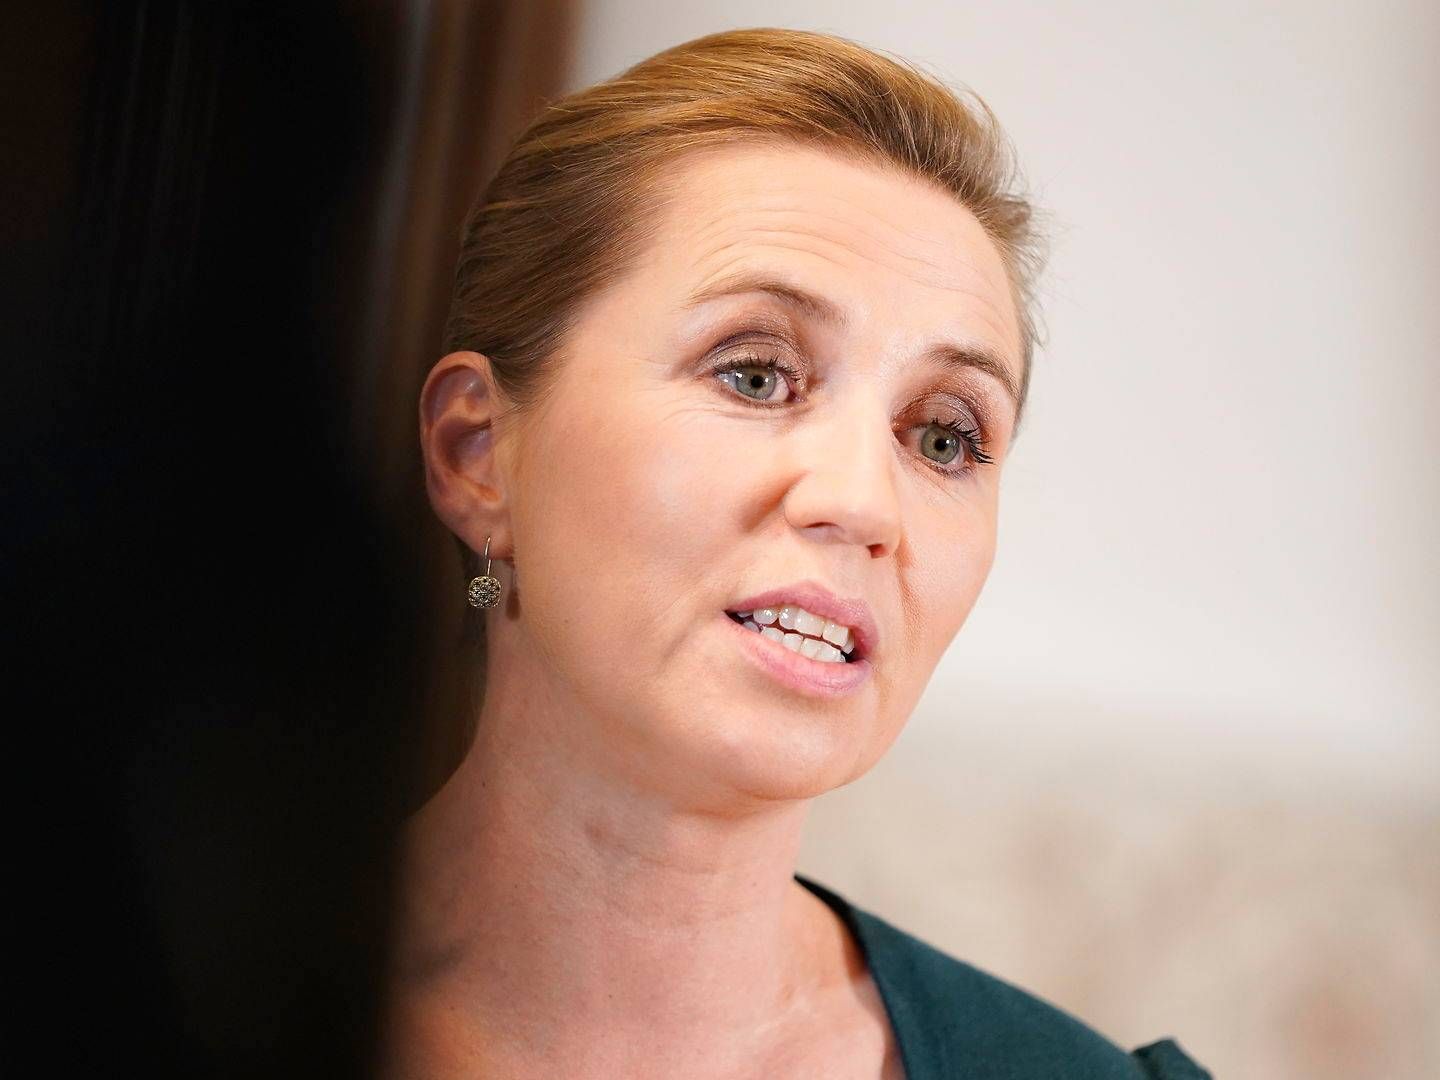 Statsminister Mette Frederiksen (S) ærgrer sig over, at hun ikke tidligere har fået gjort mere ved sexismeproblemer. | Foto: Mads Claus Rasmussen/Ritzau Scanpix